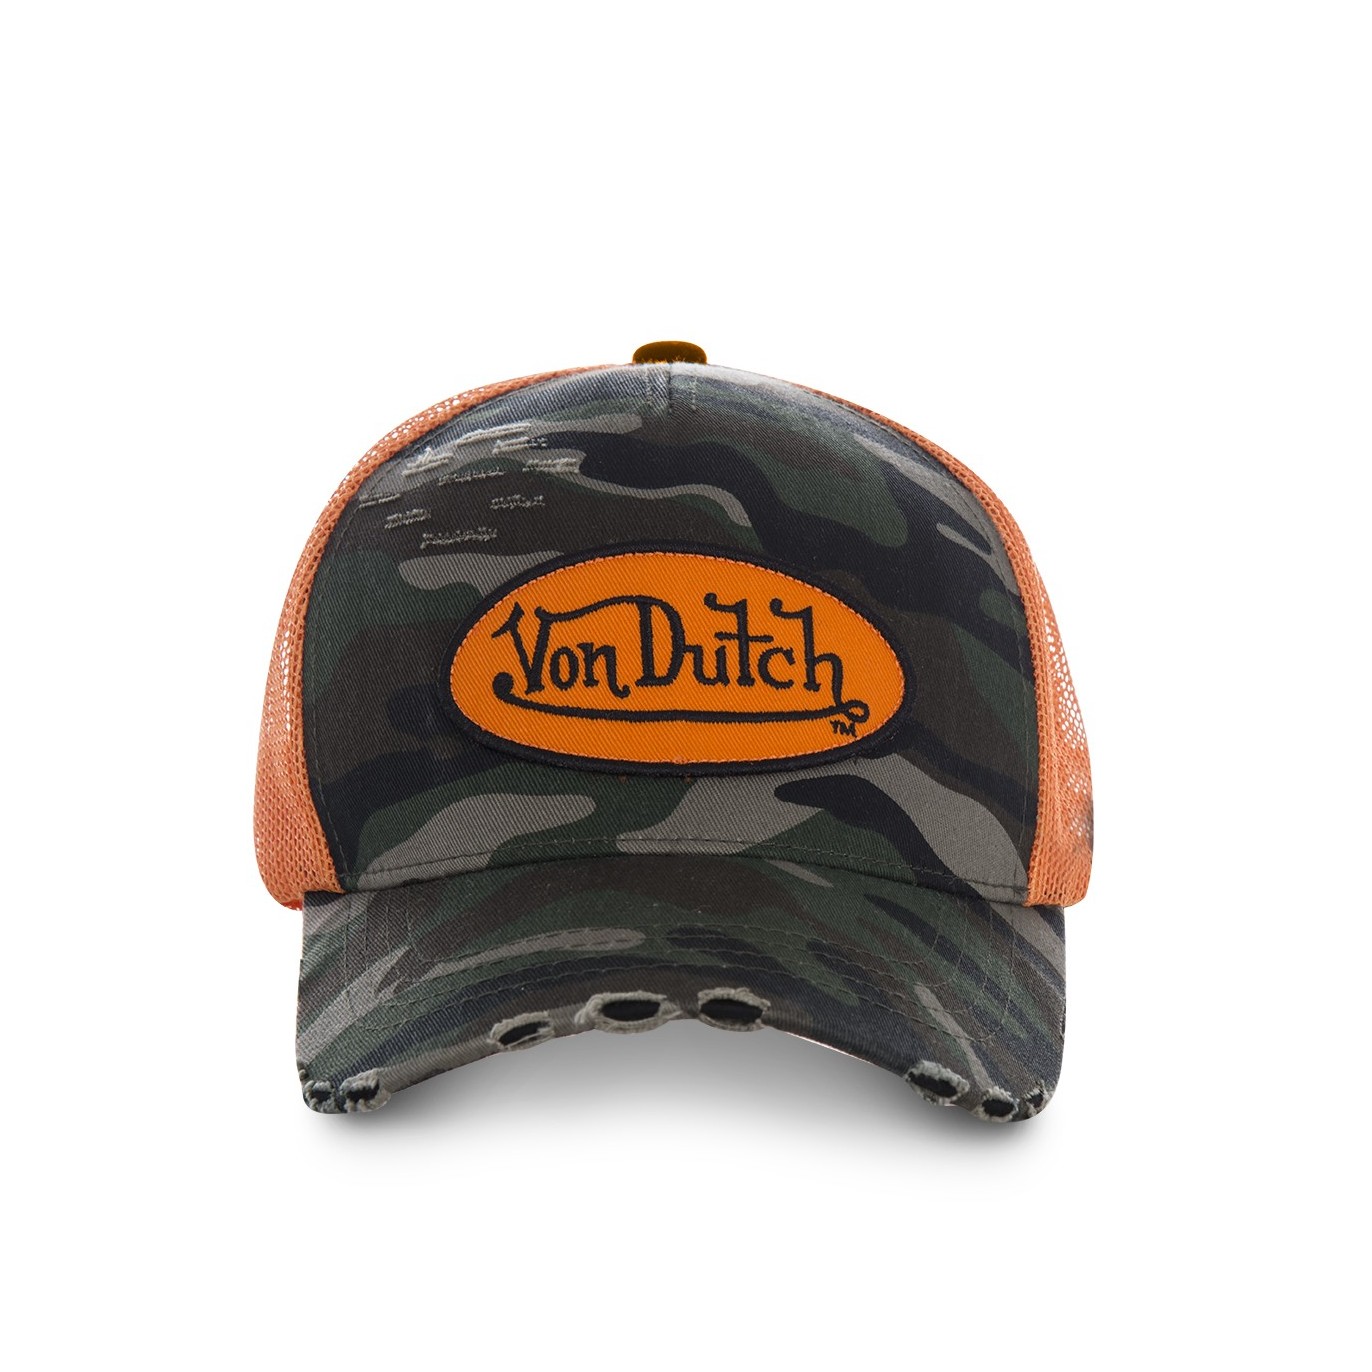 Casquette baseball homme Von Dutch Camouflage filet Orange - Von Dutch